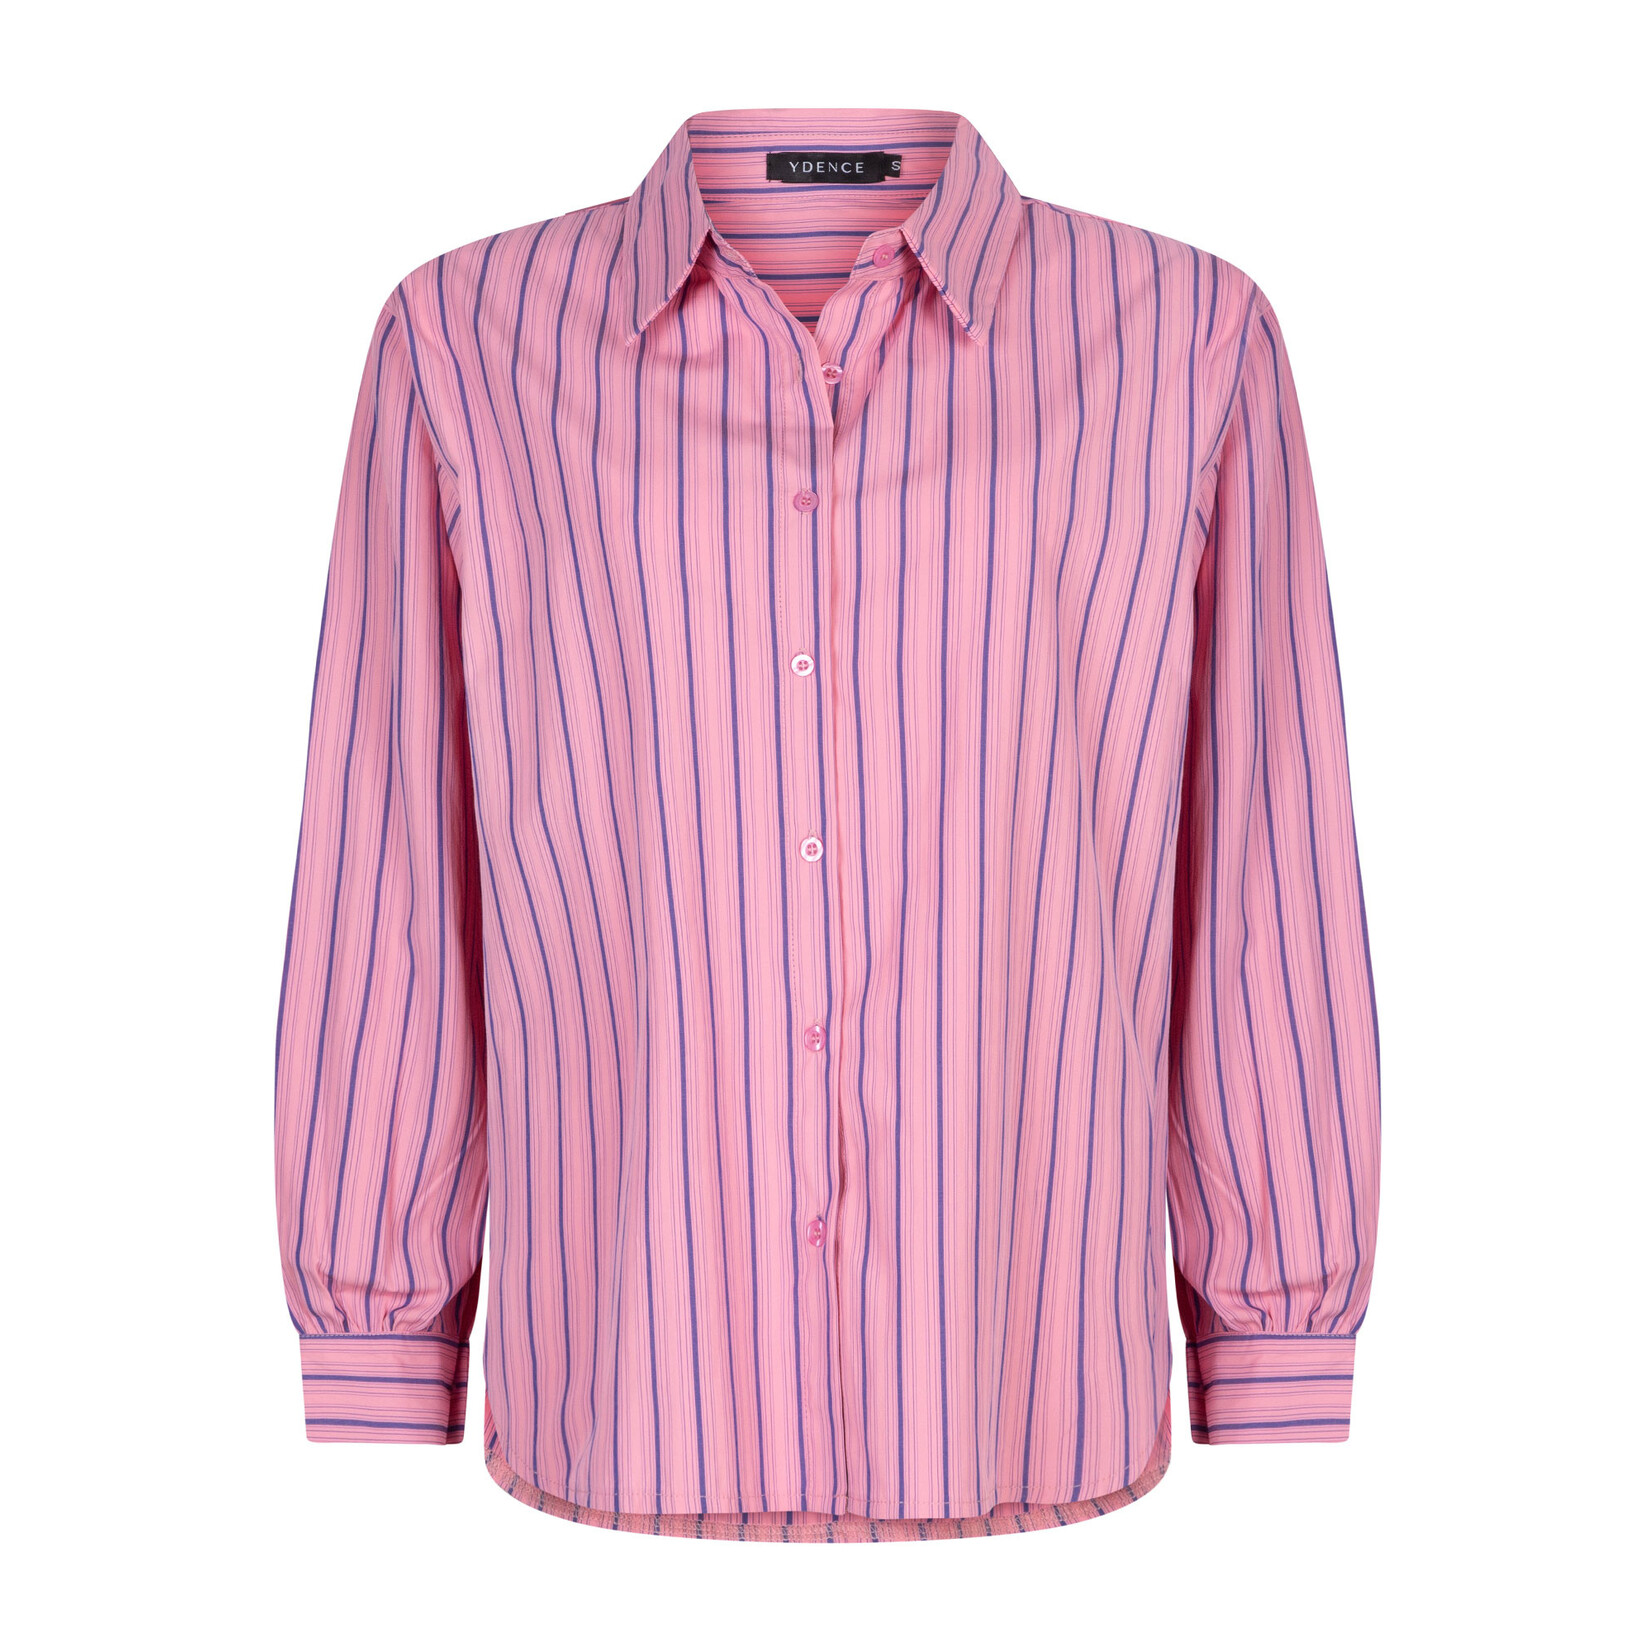 Overhemd, roze en toch stoer, met blauw streepje